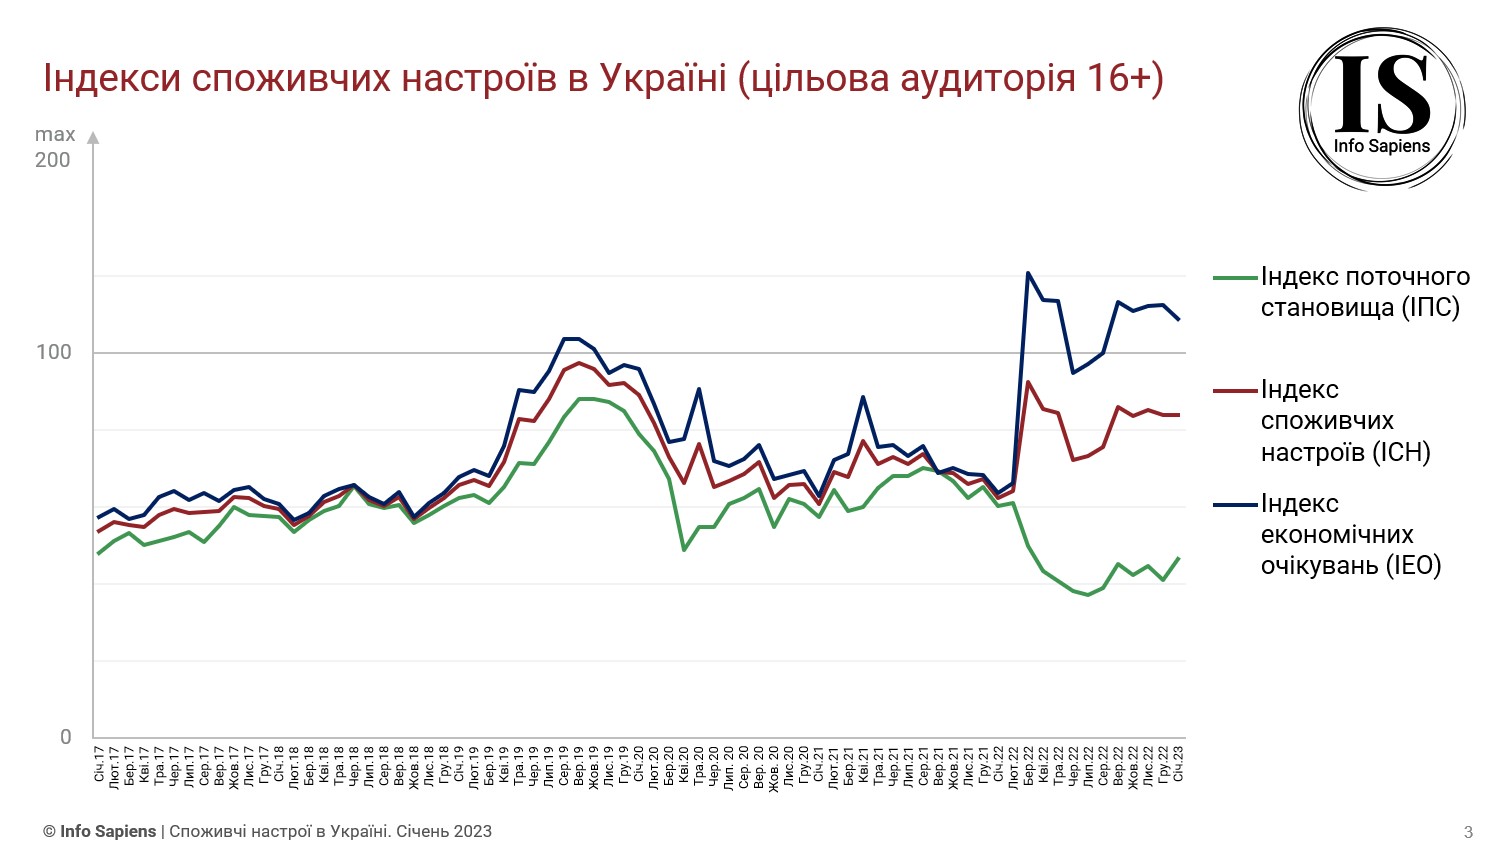 Графік динаміки індексу споживчих настроїв в Україні за січень 2023 (цільова аудиторія 16+)